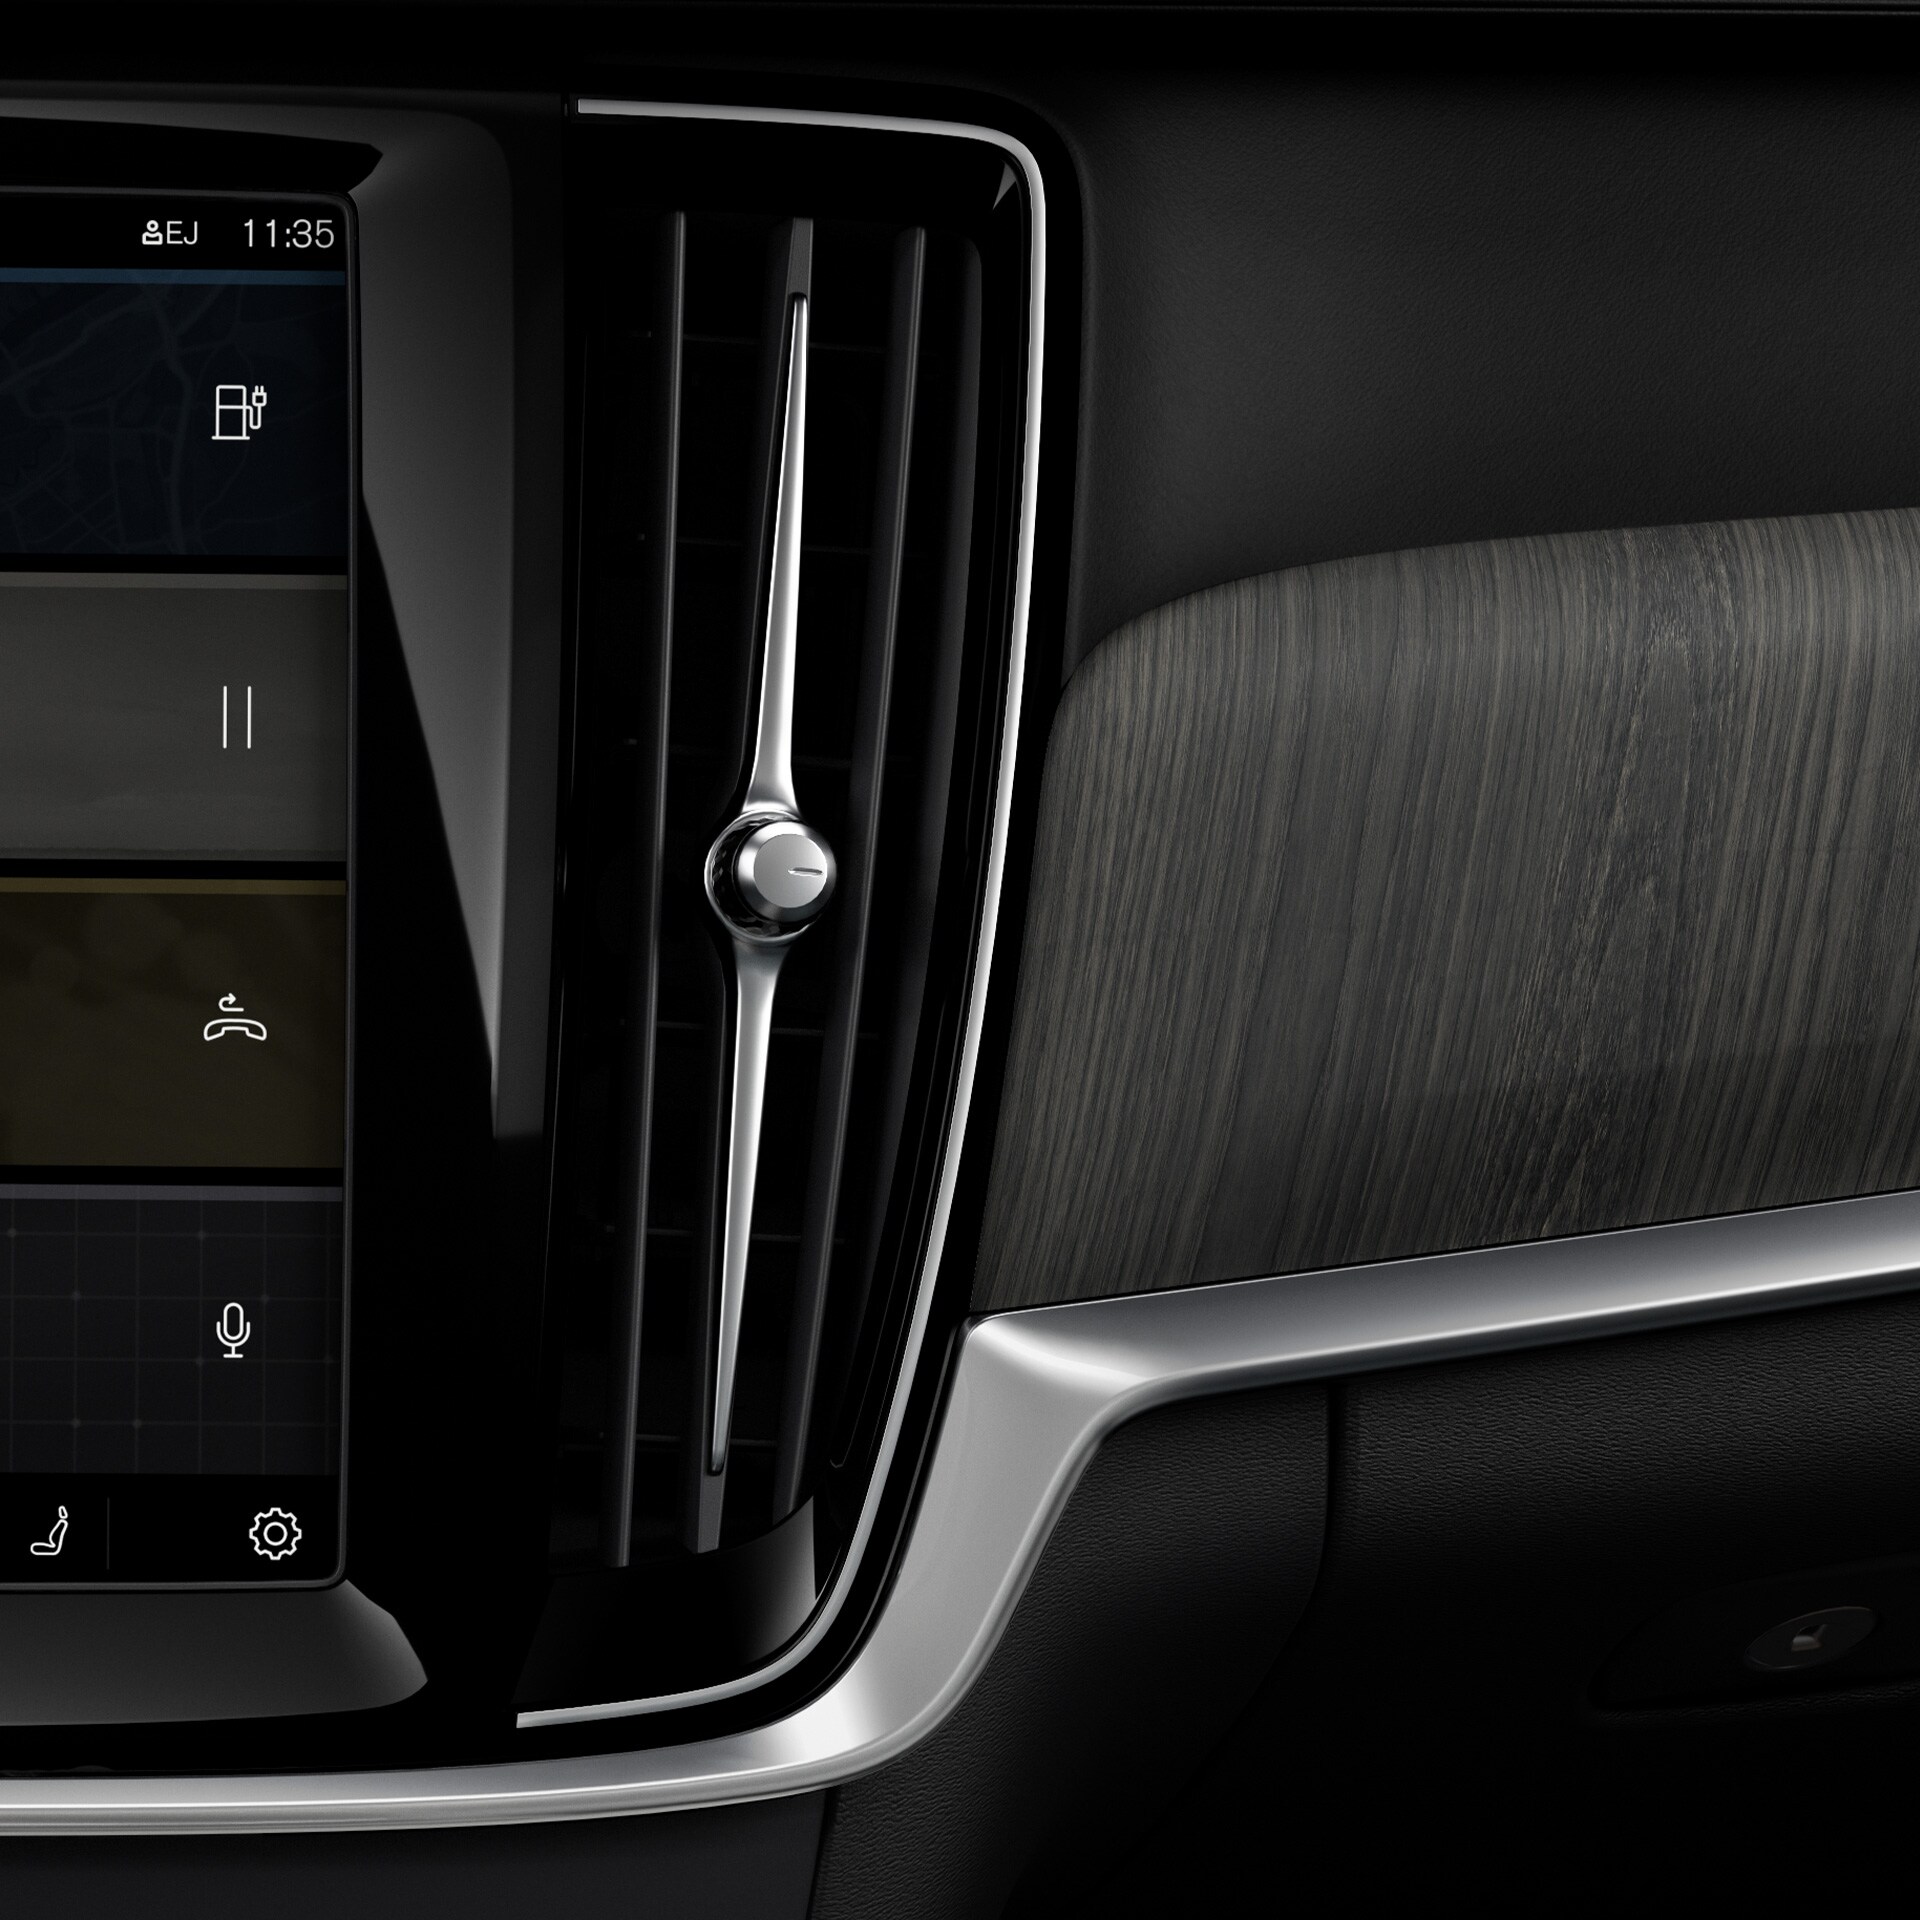 Zaawansowany filtr w Volvo V90 Recharge pomaga Tobie i Twoim pasażerom cieszyć się lepszym i zdrowszym powietrzem.